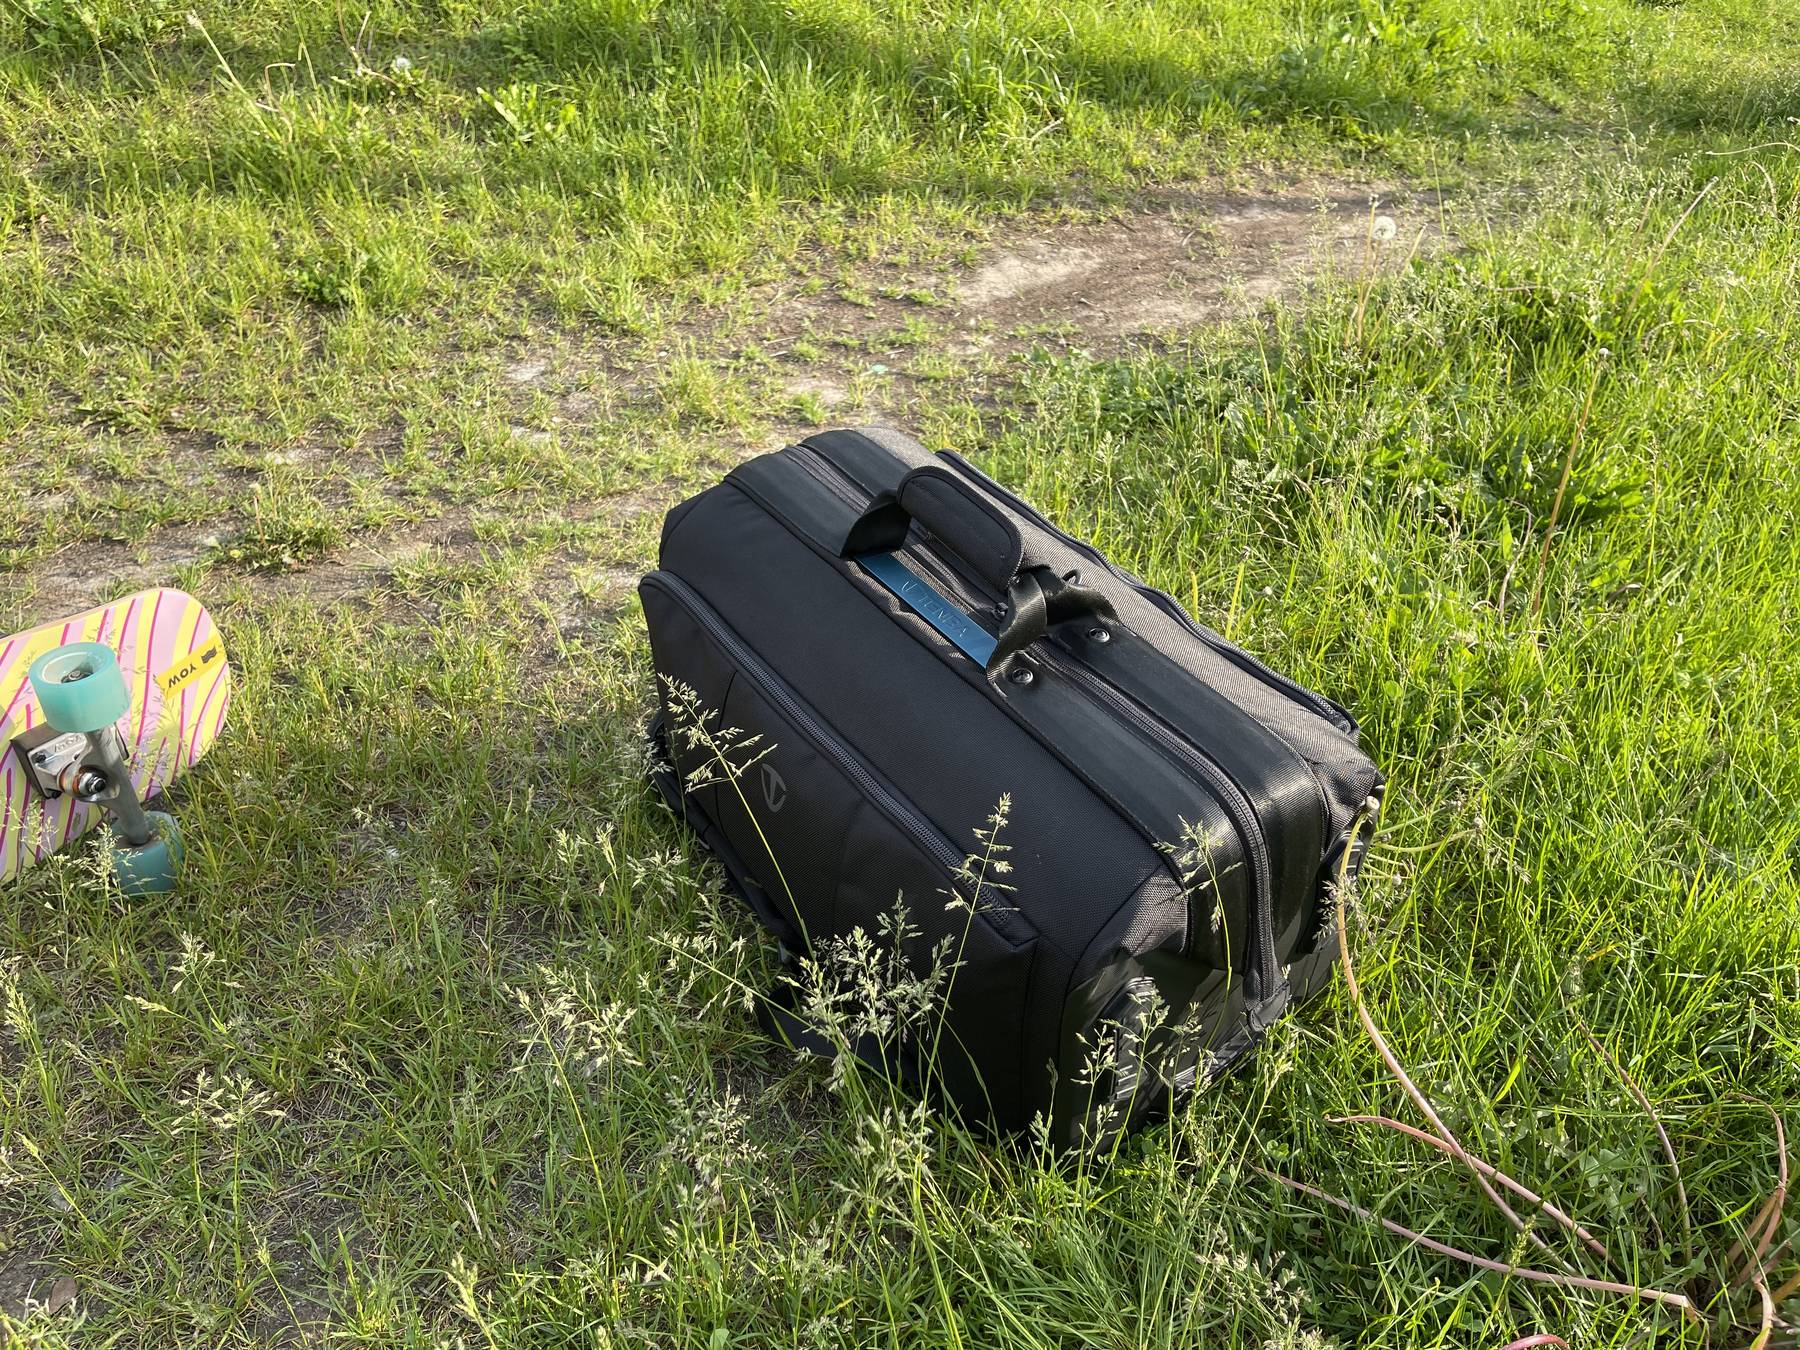 Обзор Tenba Cineluxe Backpack 24 - большой рюкзак для операторов и фотографов